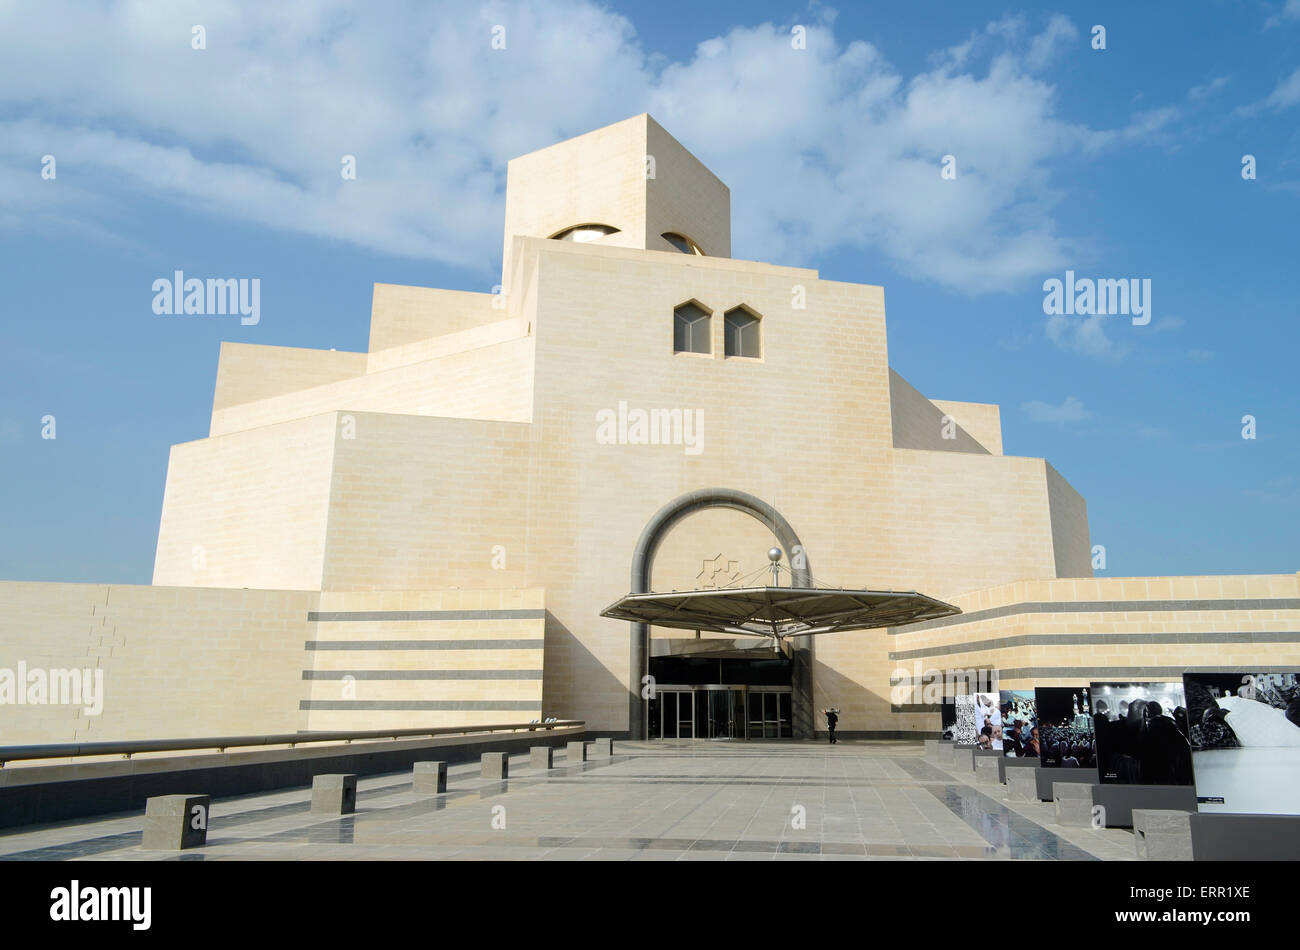 La moderna architettura del museo di arti islamiche (MIA) nel centro della città di Doha la capitale del Qatar. Foto Stock